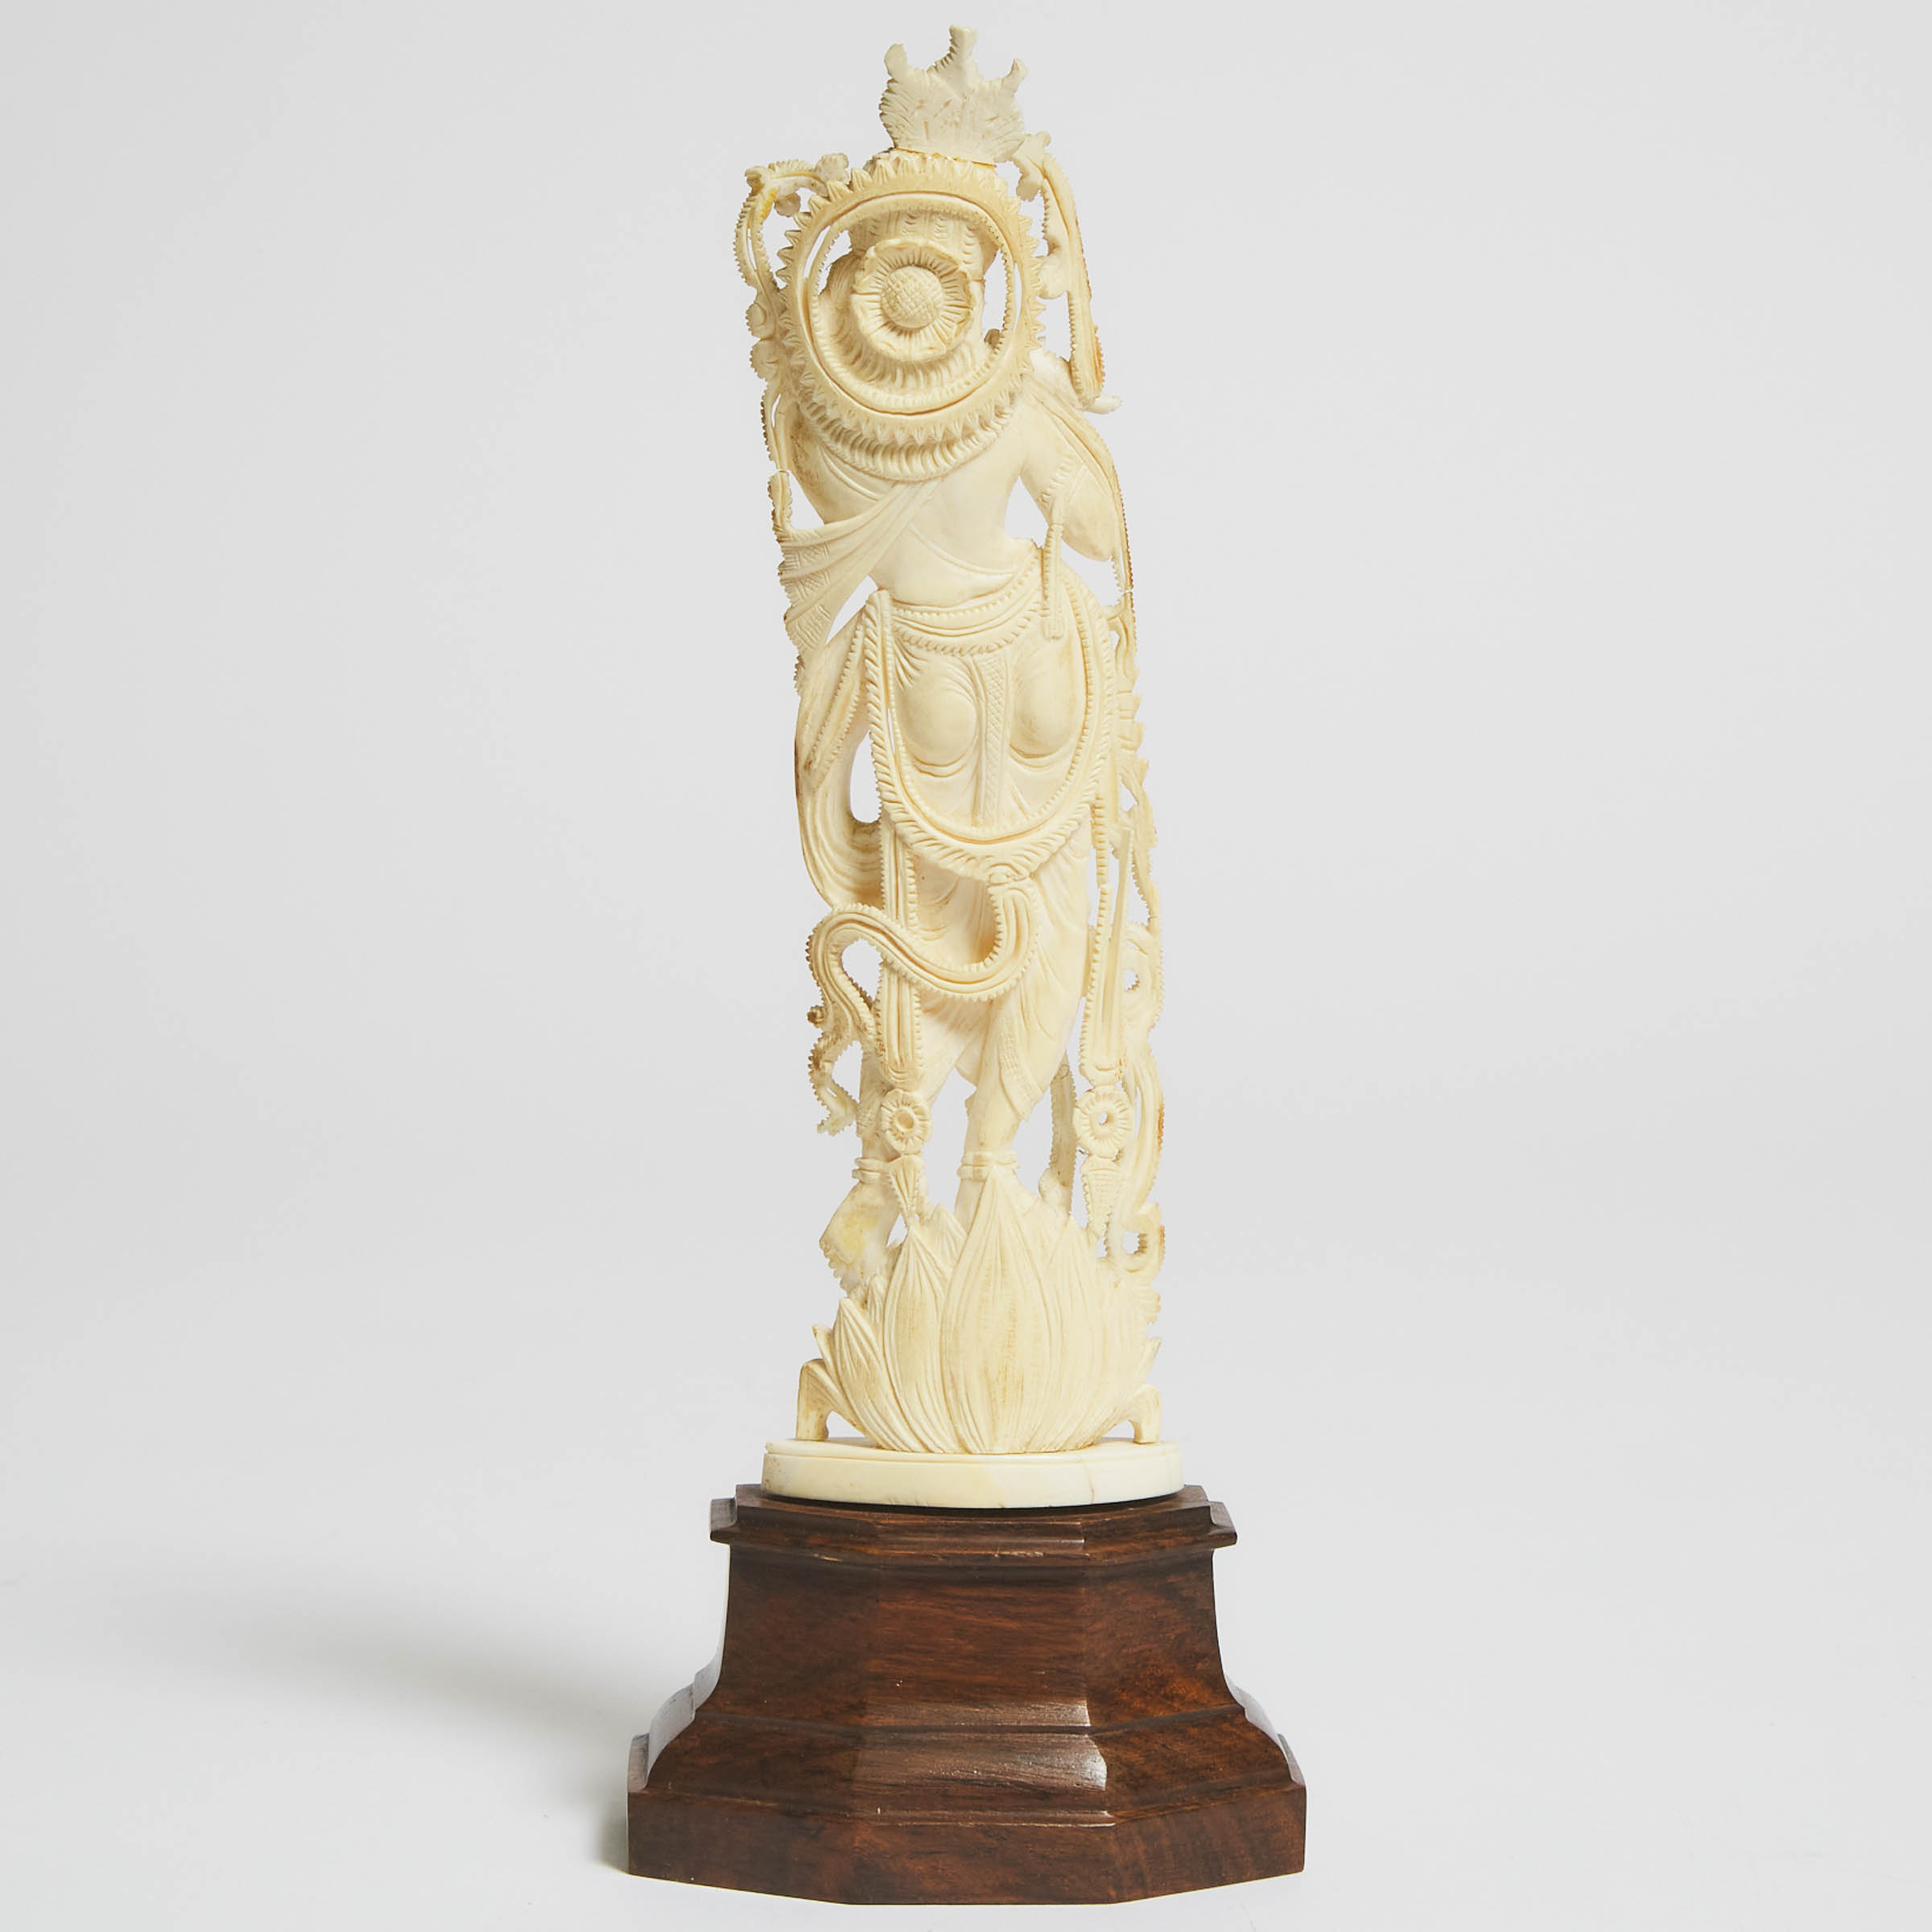 Indian Carved Ivory Presentation Figure of Krishna, c.1965